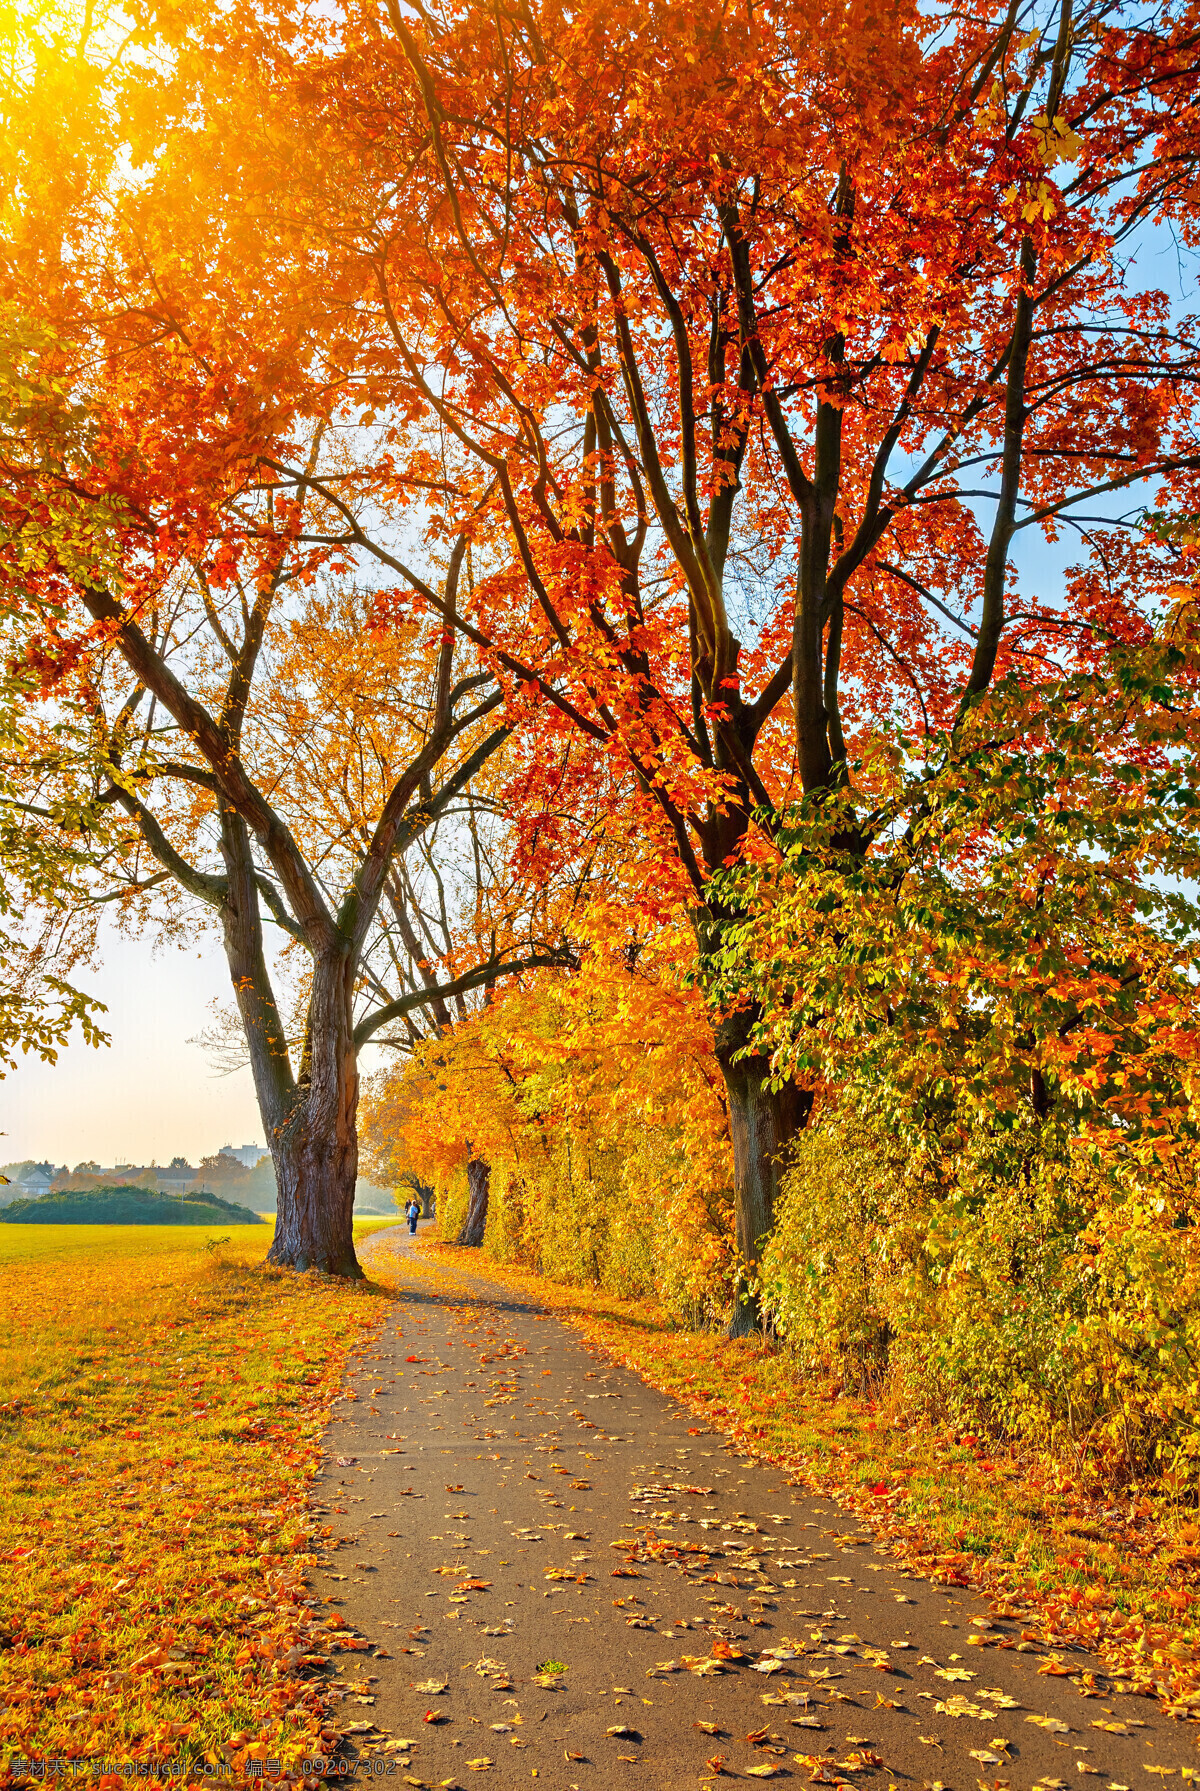 美丽 秋天 树木 道路 风景 黄叶 落叶 树叶 秋天树木风景 马路风景 道路风景 枫树林风景 花草树木 生物世界